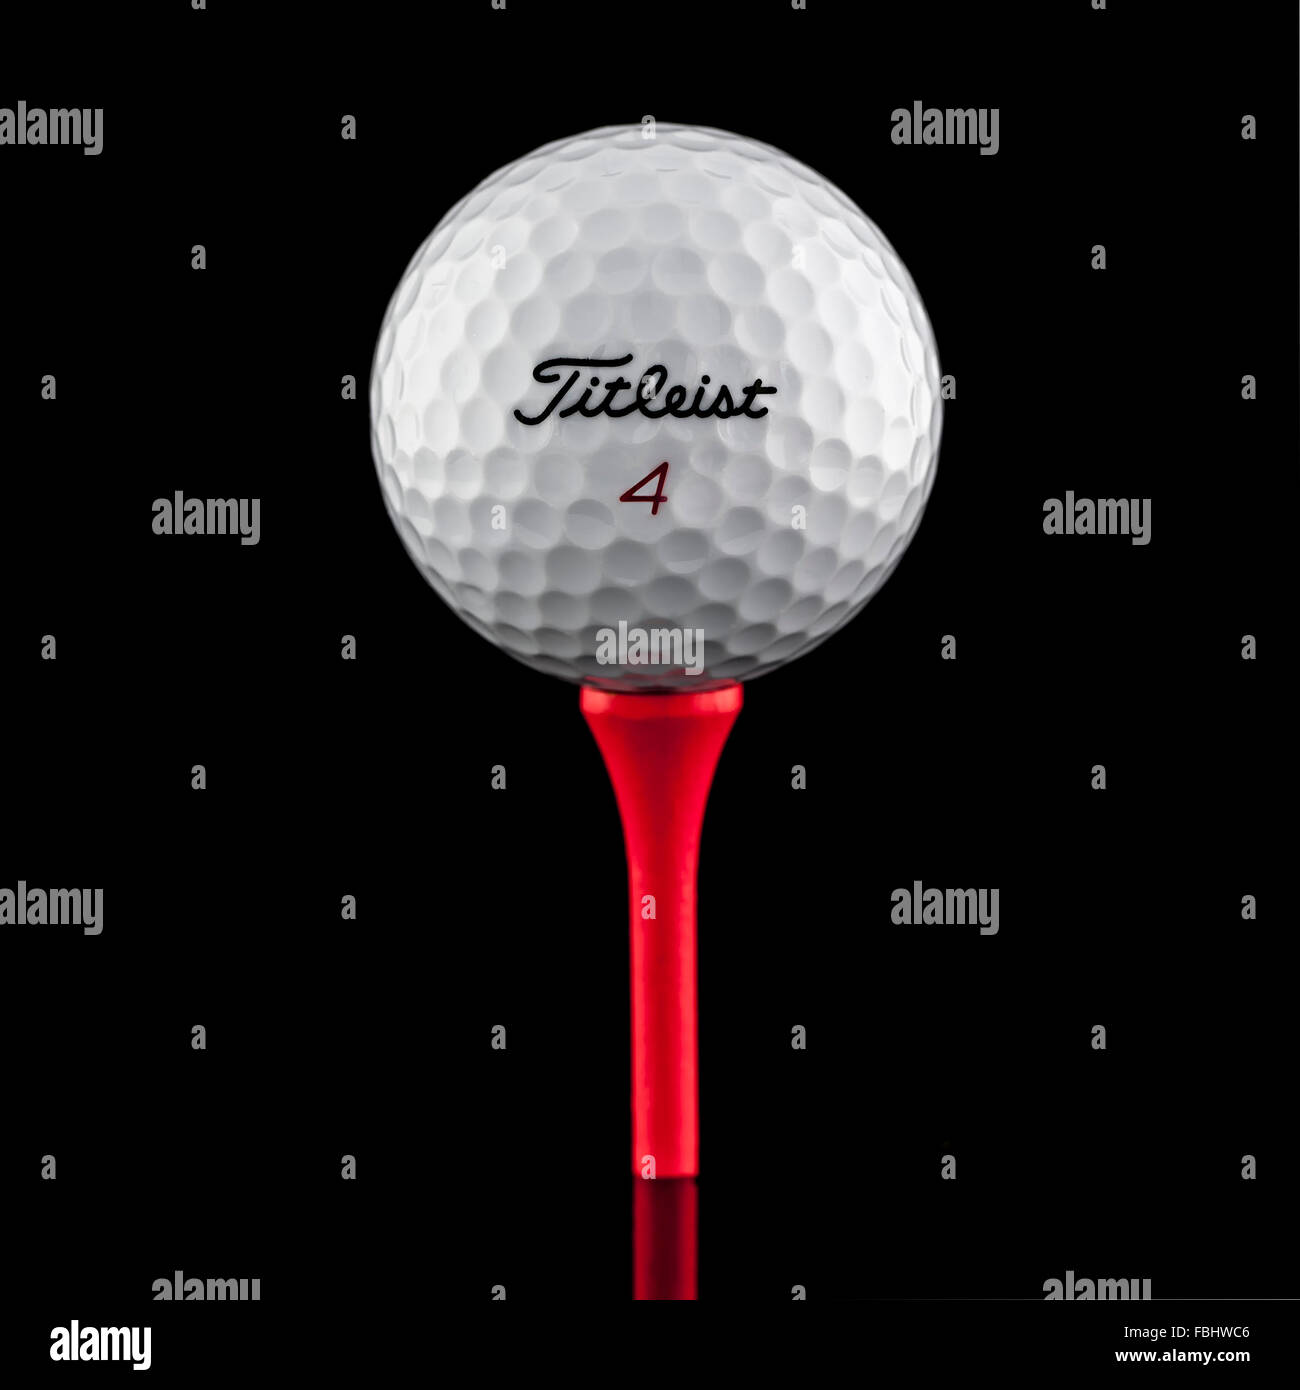 Balle de Golf Titleist sur un Tee rouge sur fond noir Banque D'Images